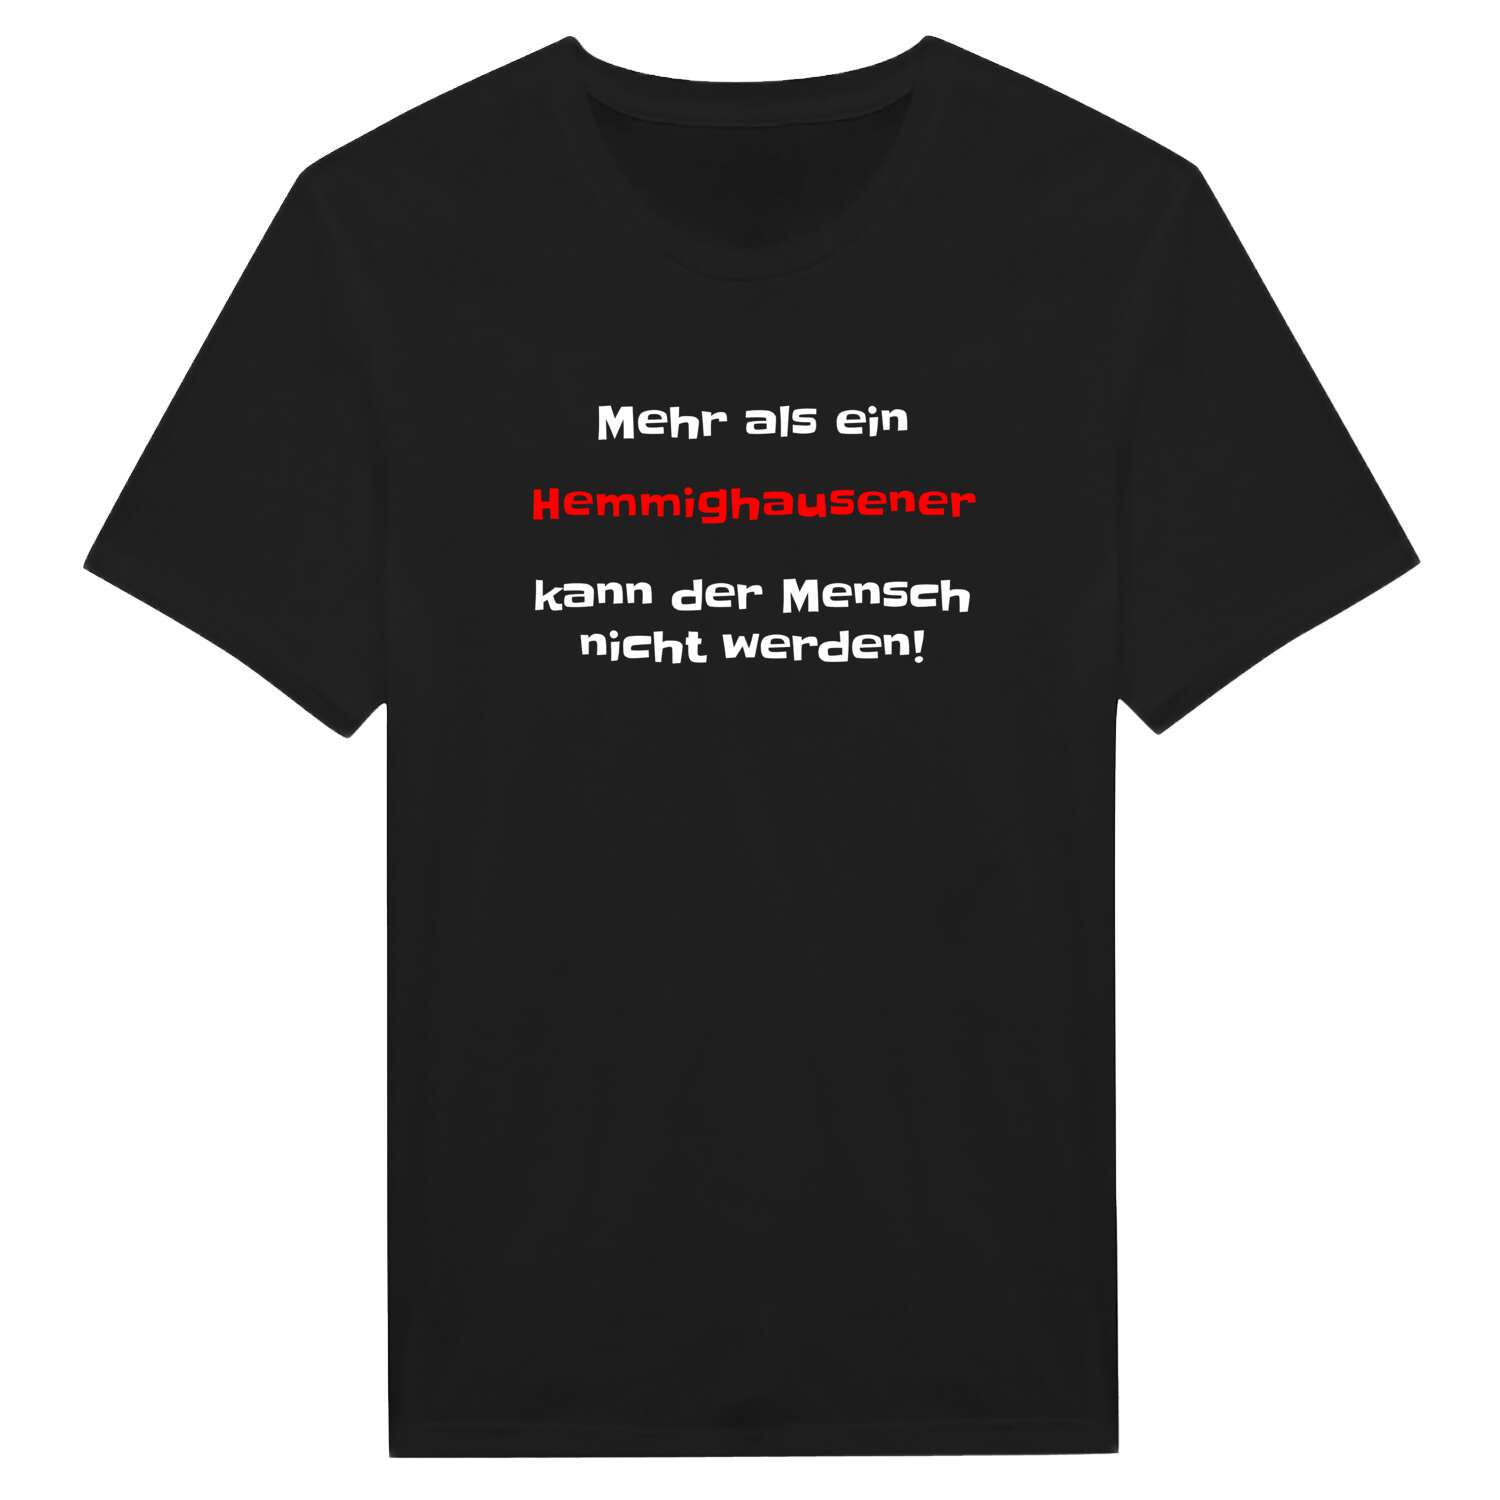 Hemmighausen T-Shirt »Mehr als ein«